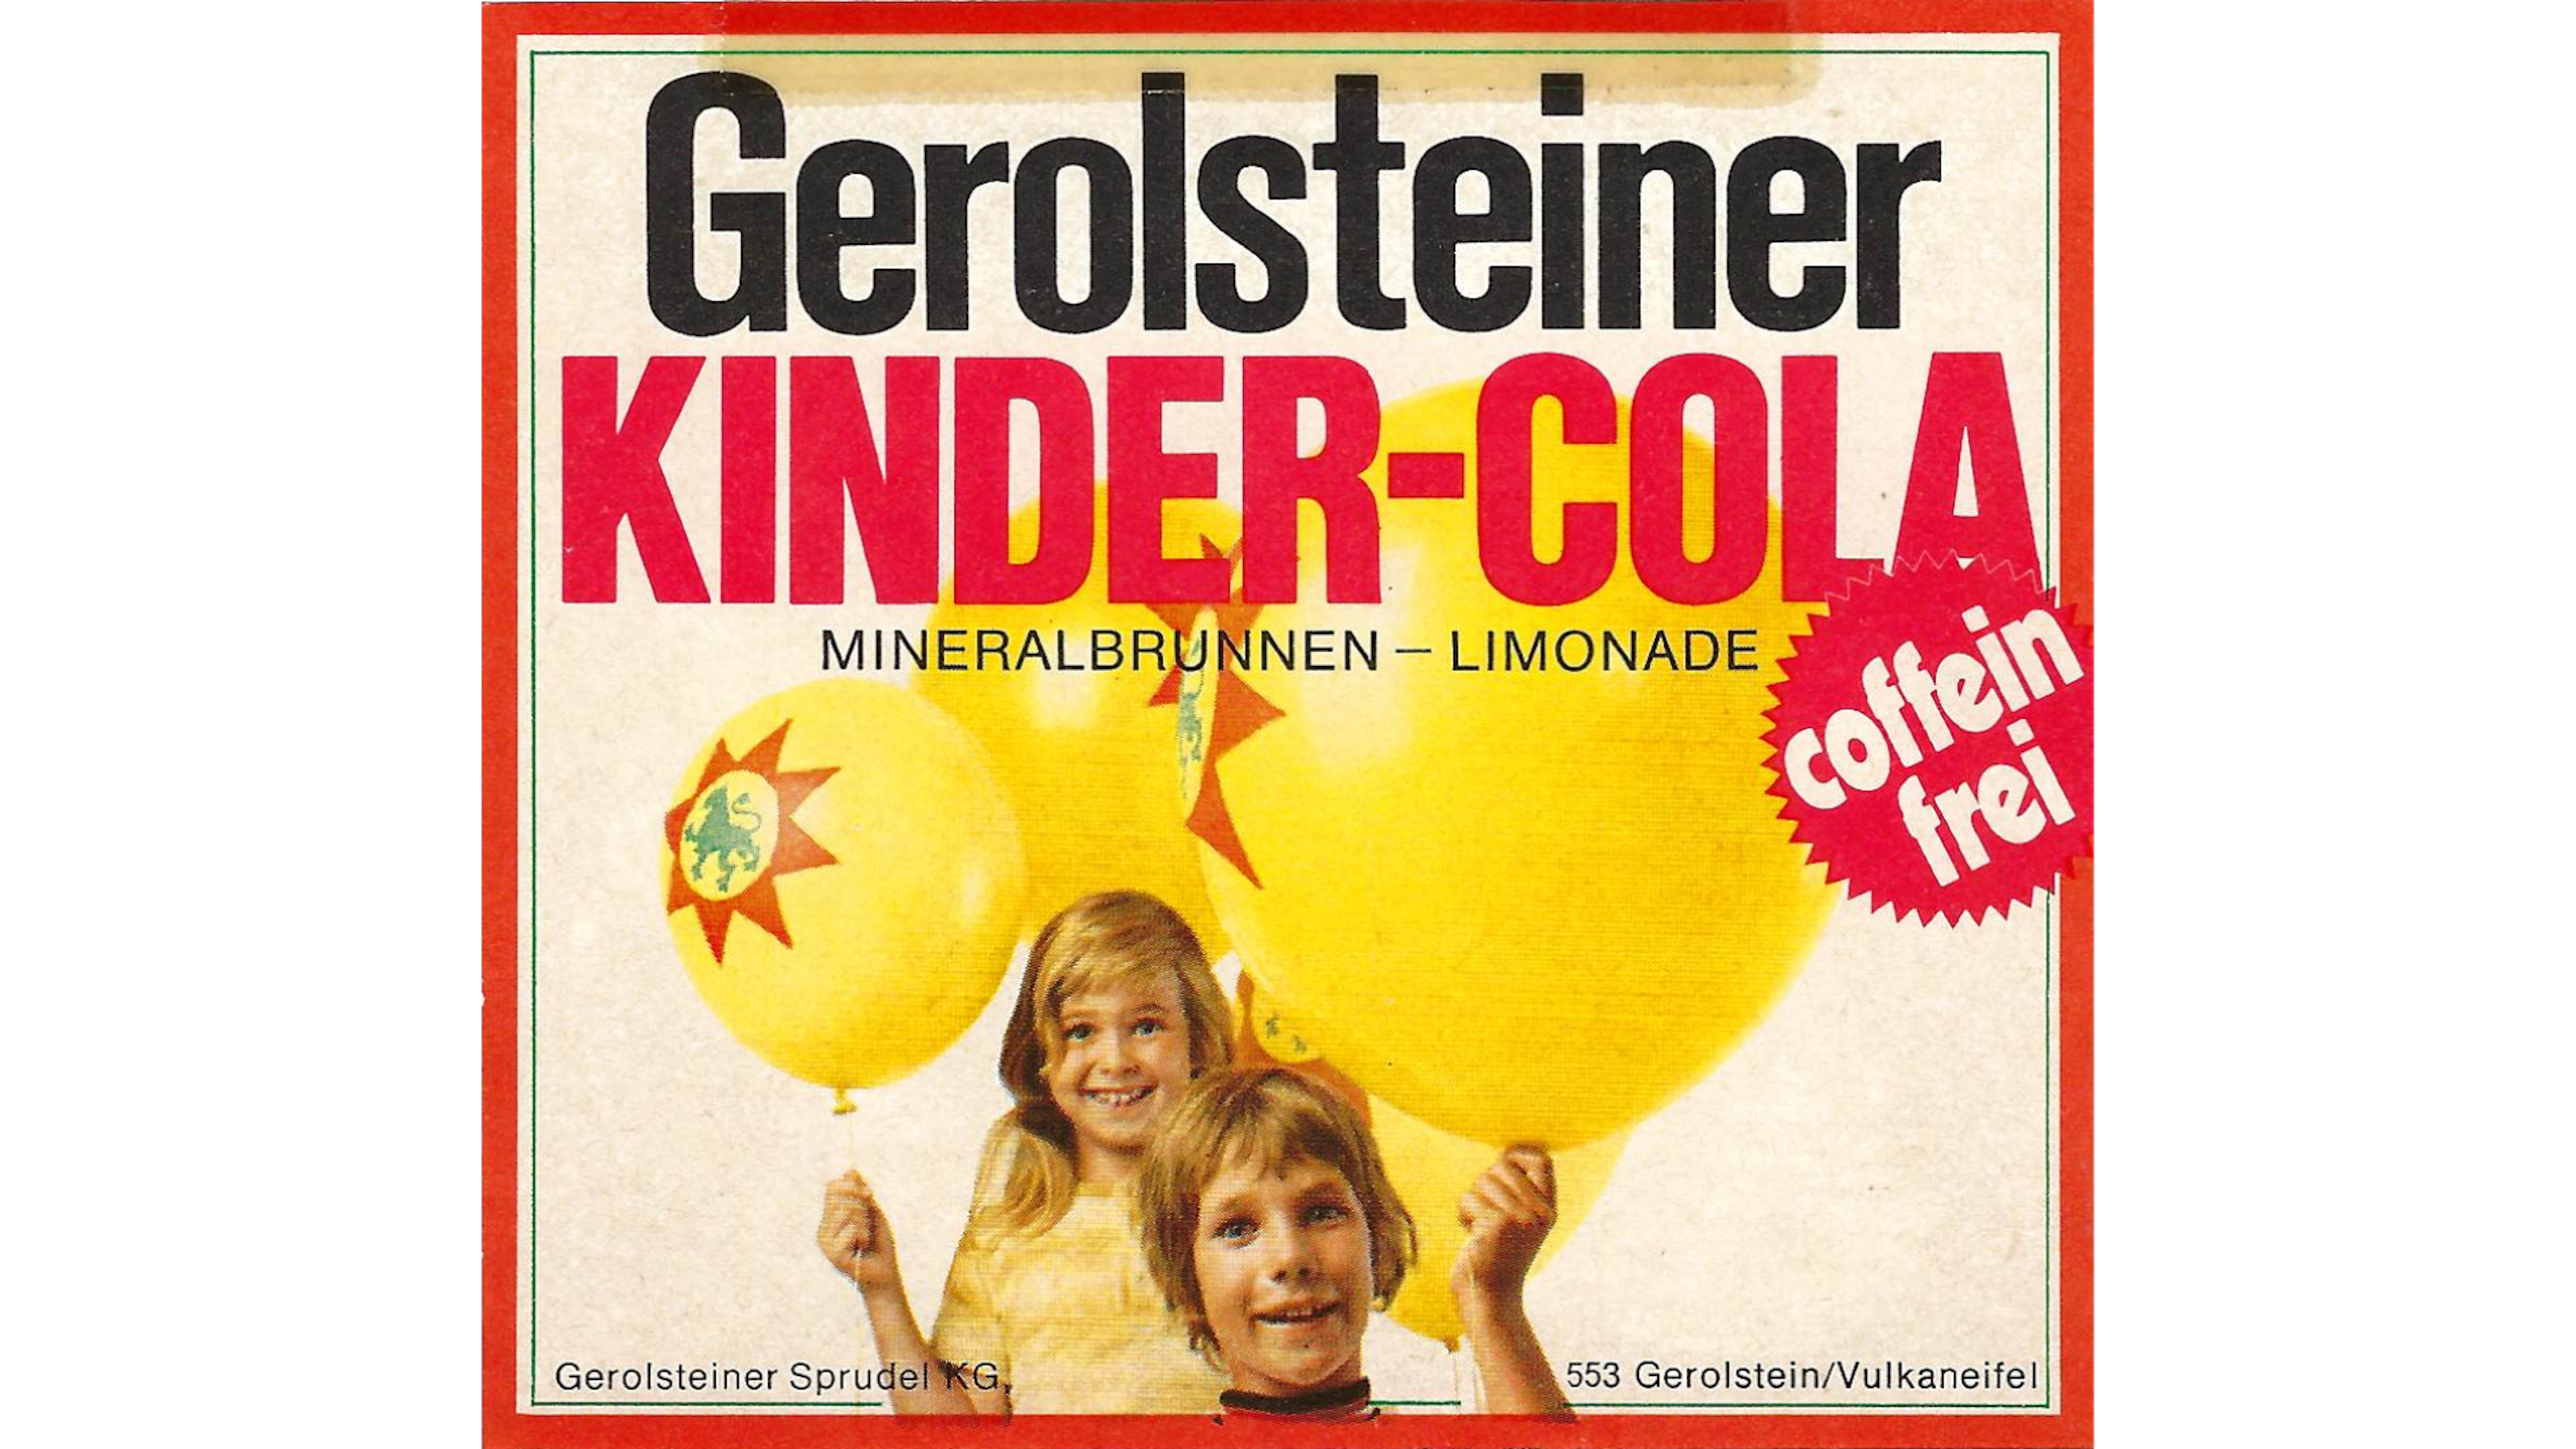 Das Ettiket der Gerolsteiner Kindercola um 1971